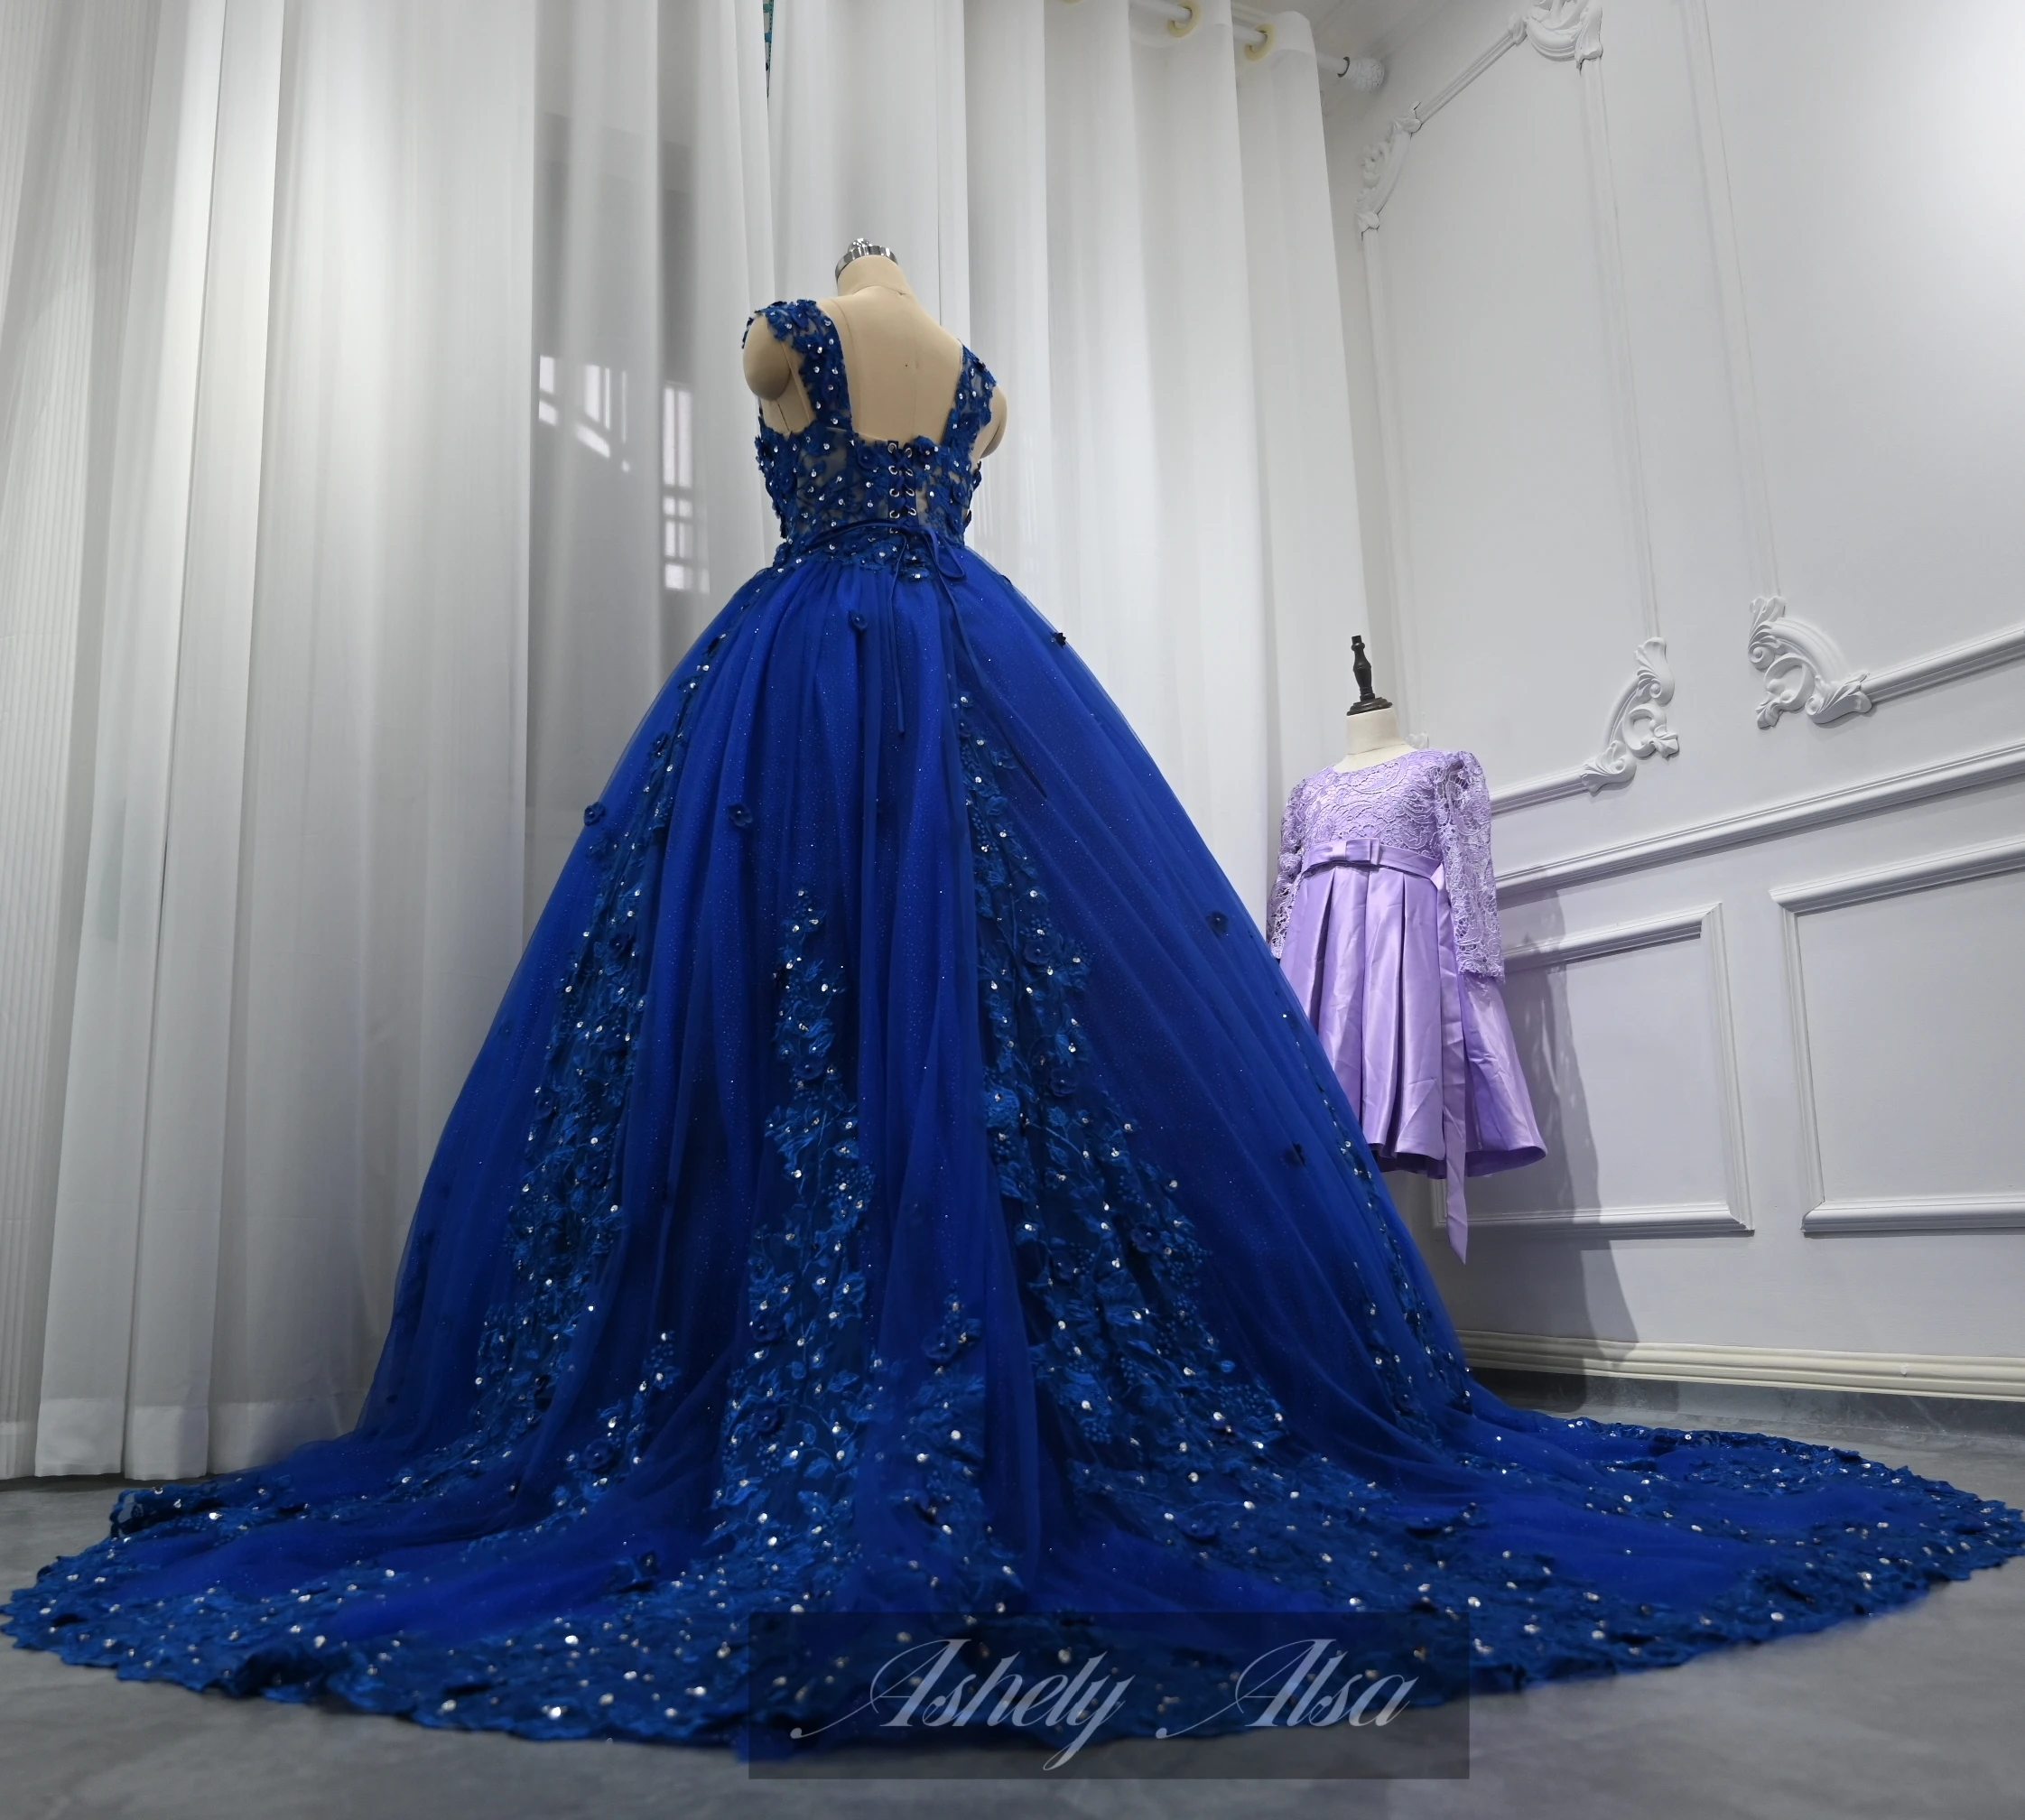 Ashely Alsa Blue Quinceanera Платья 3D цветок Принцесса 16 лет Бальные платья для девочек Официальная вечеринка Платье для выпускного вечера Vestidos De 15 Anos Изображение 5